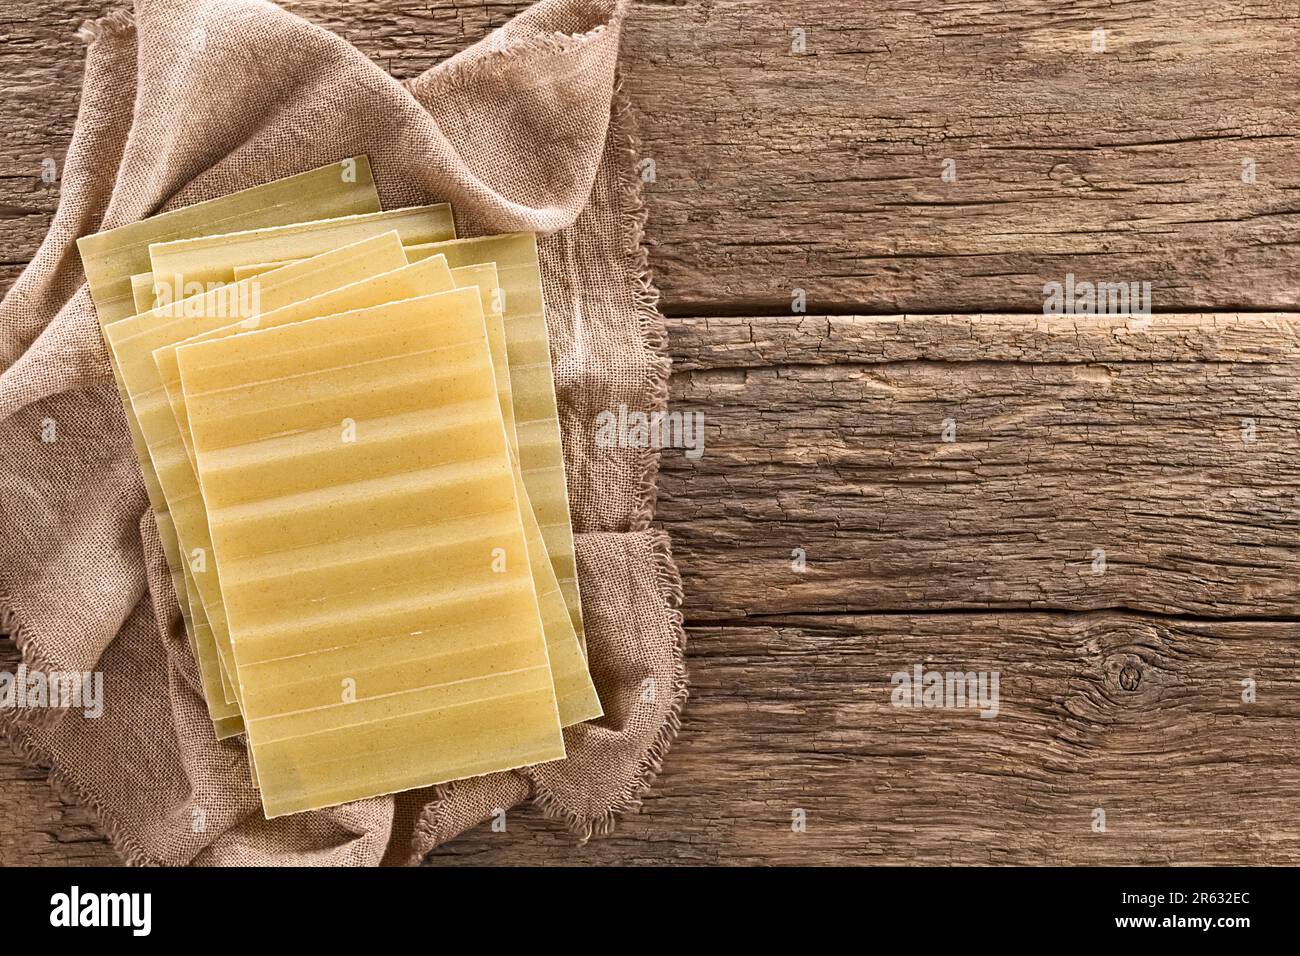 Sfoglia di lasagne rigate a secco, non cotte, fotografata in alto su legno rustico con copia di lato Foto Stock